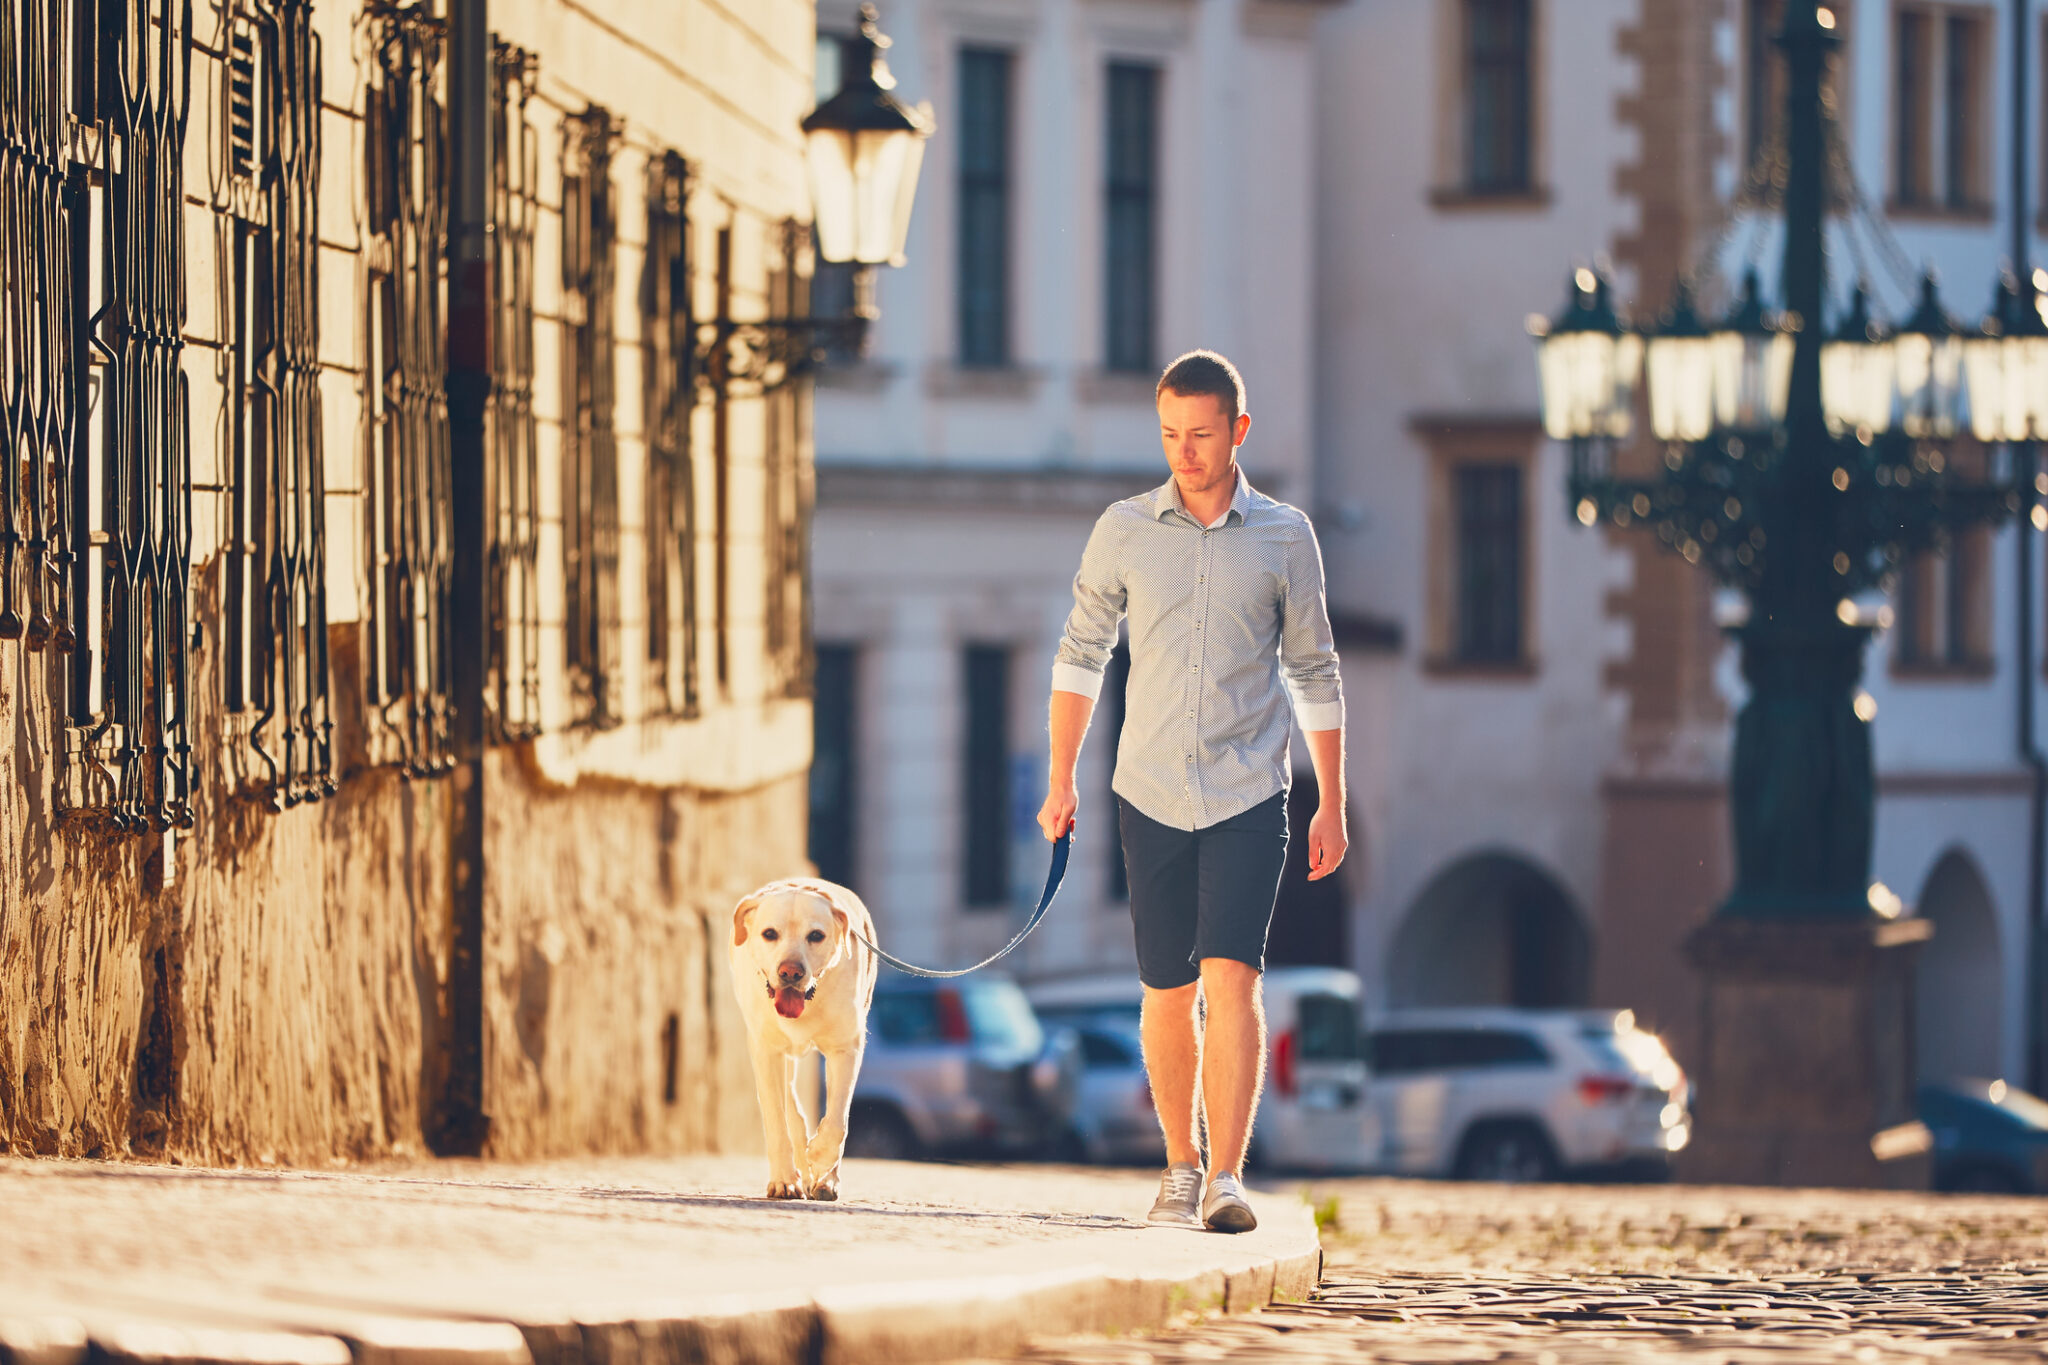 dog-walking-on-hot-pavement